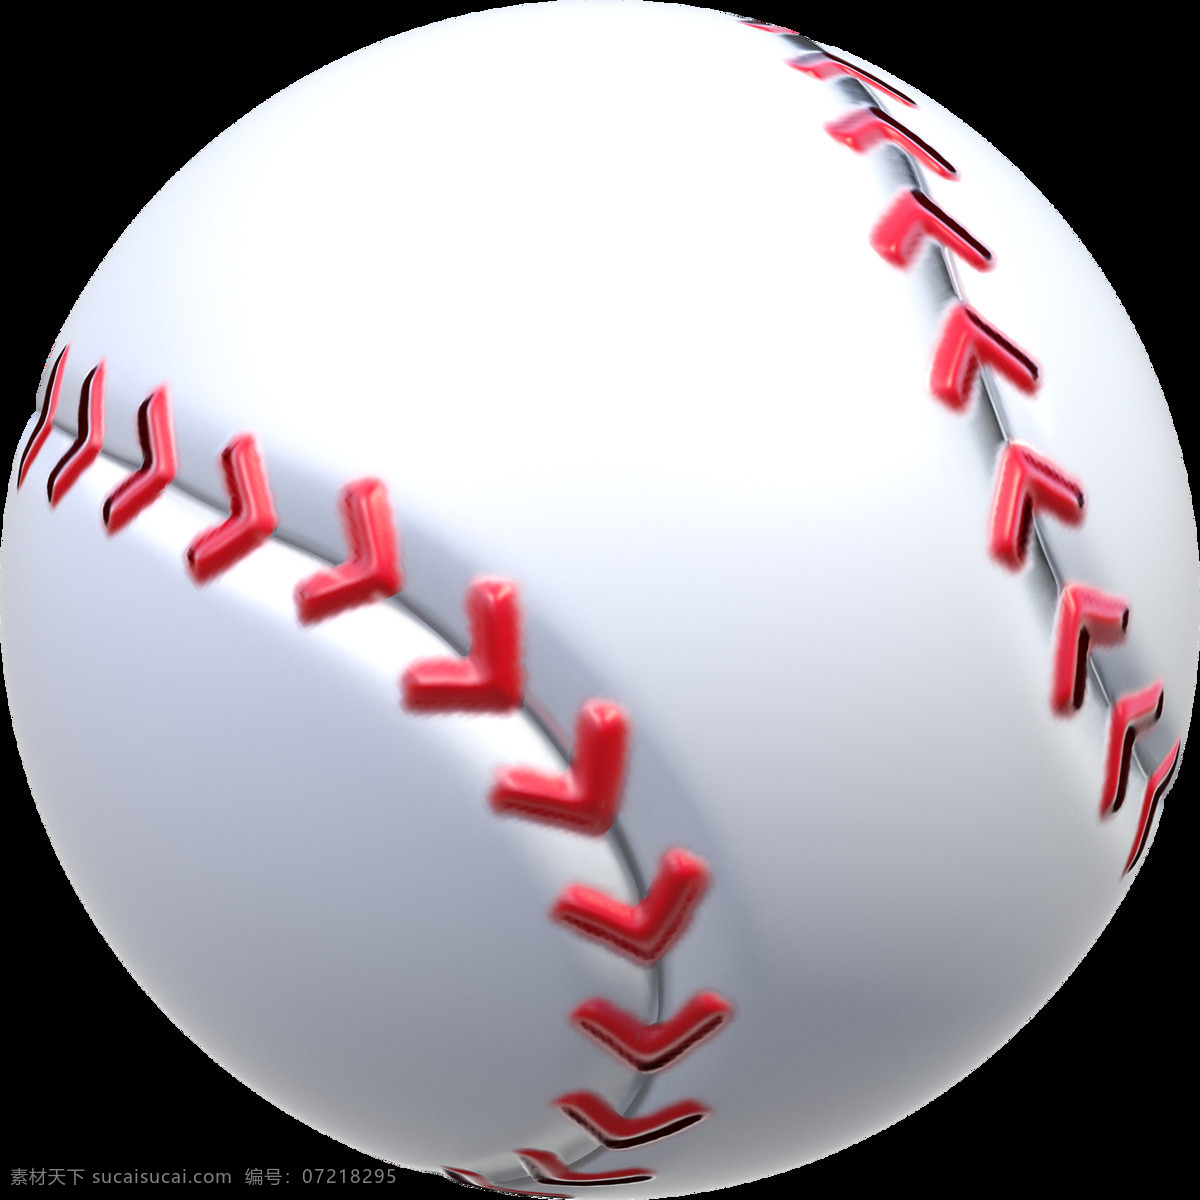 棒球 大特写 免 抠 透明 图 层 棒球运动器材 棒球运动 棒球照片 圆形棒球 真皮棒球 白色棒球 结实的棒球 棒球运动装备 棒球元素图片 棒球真实照片